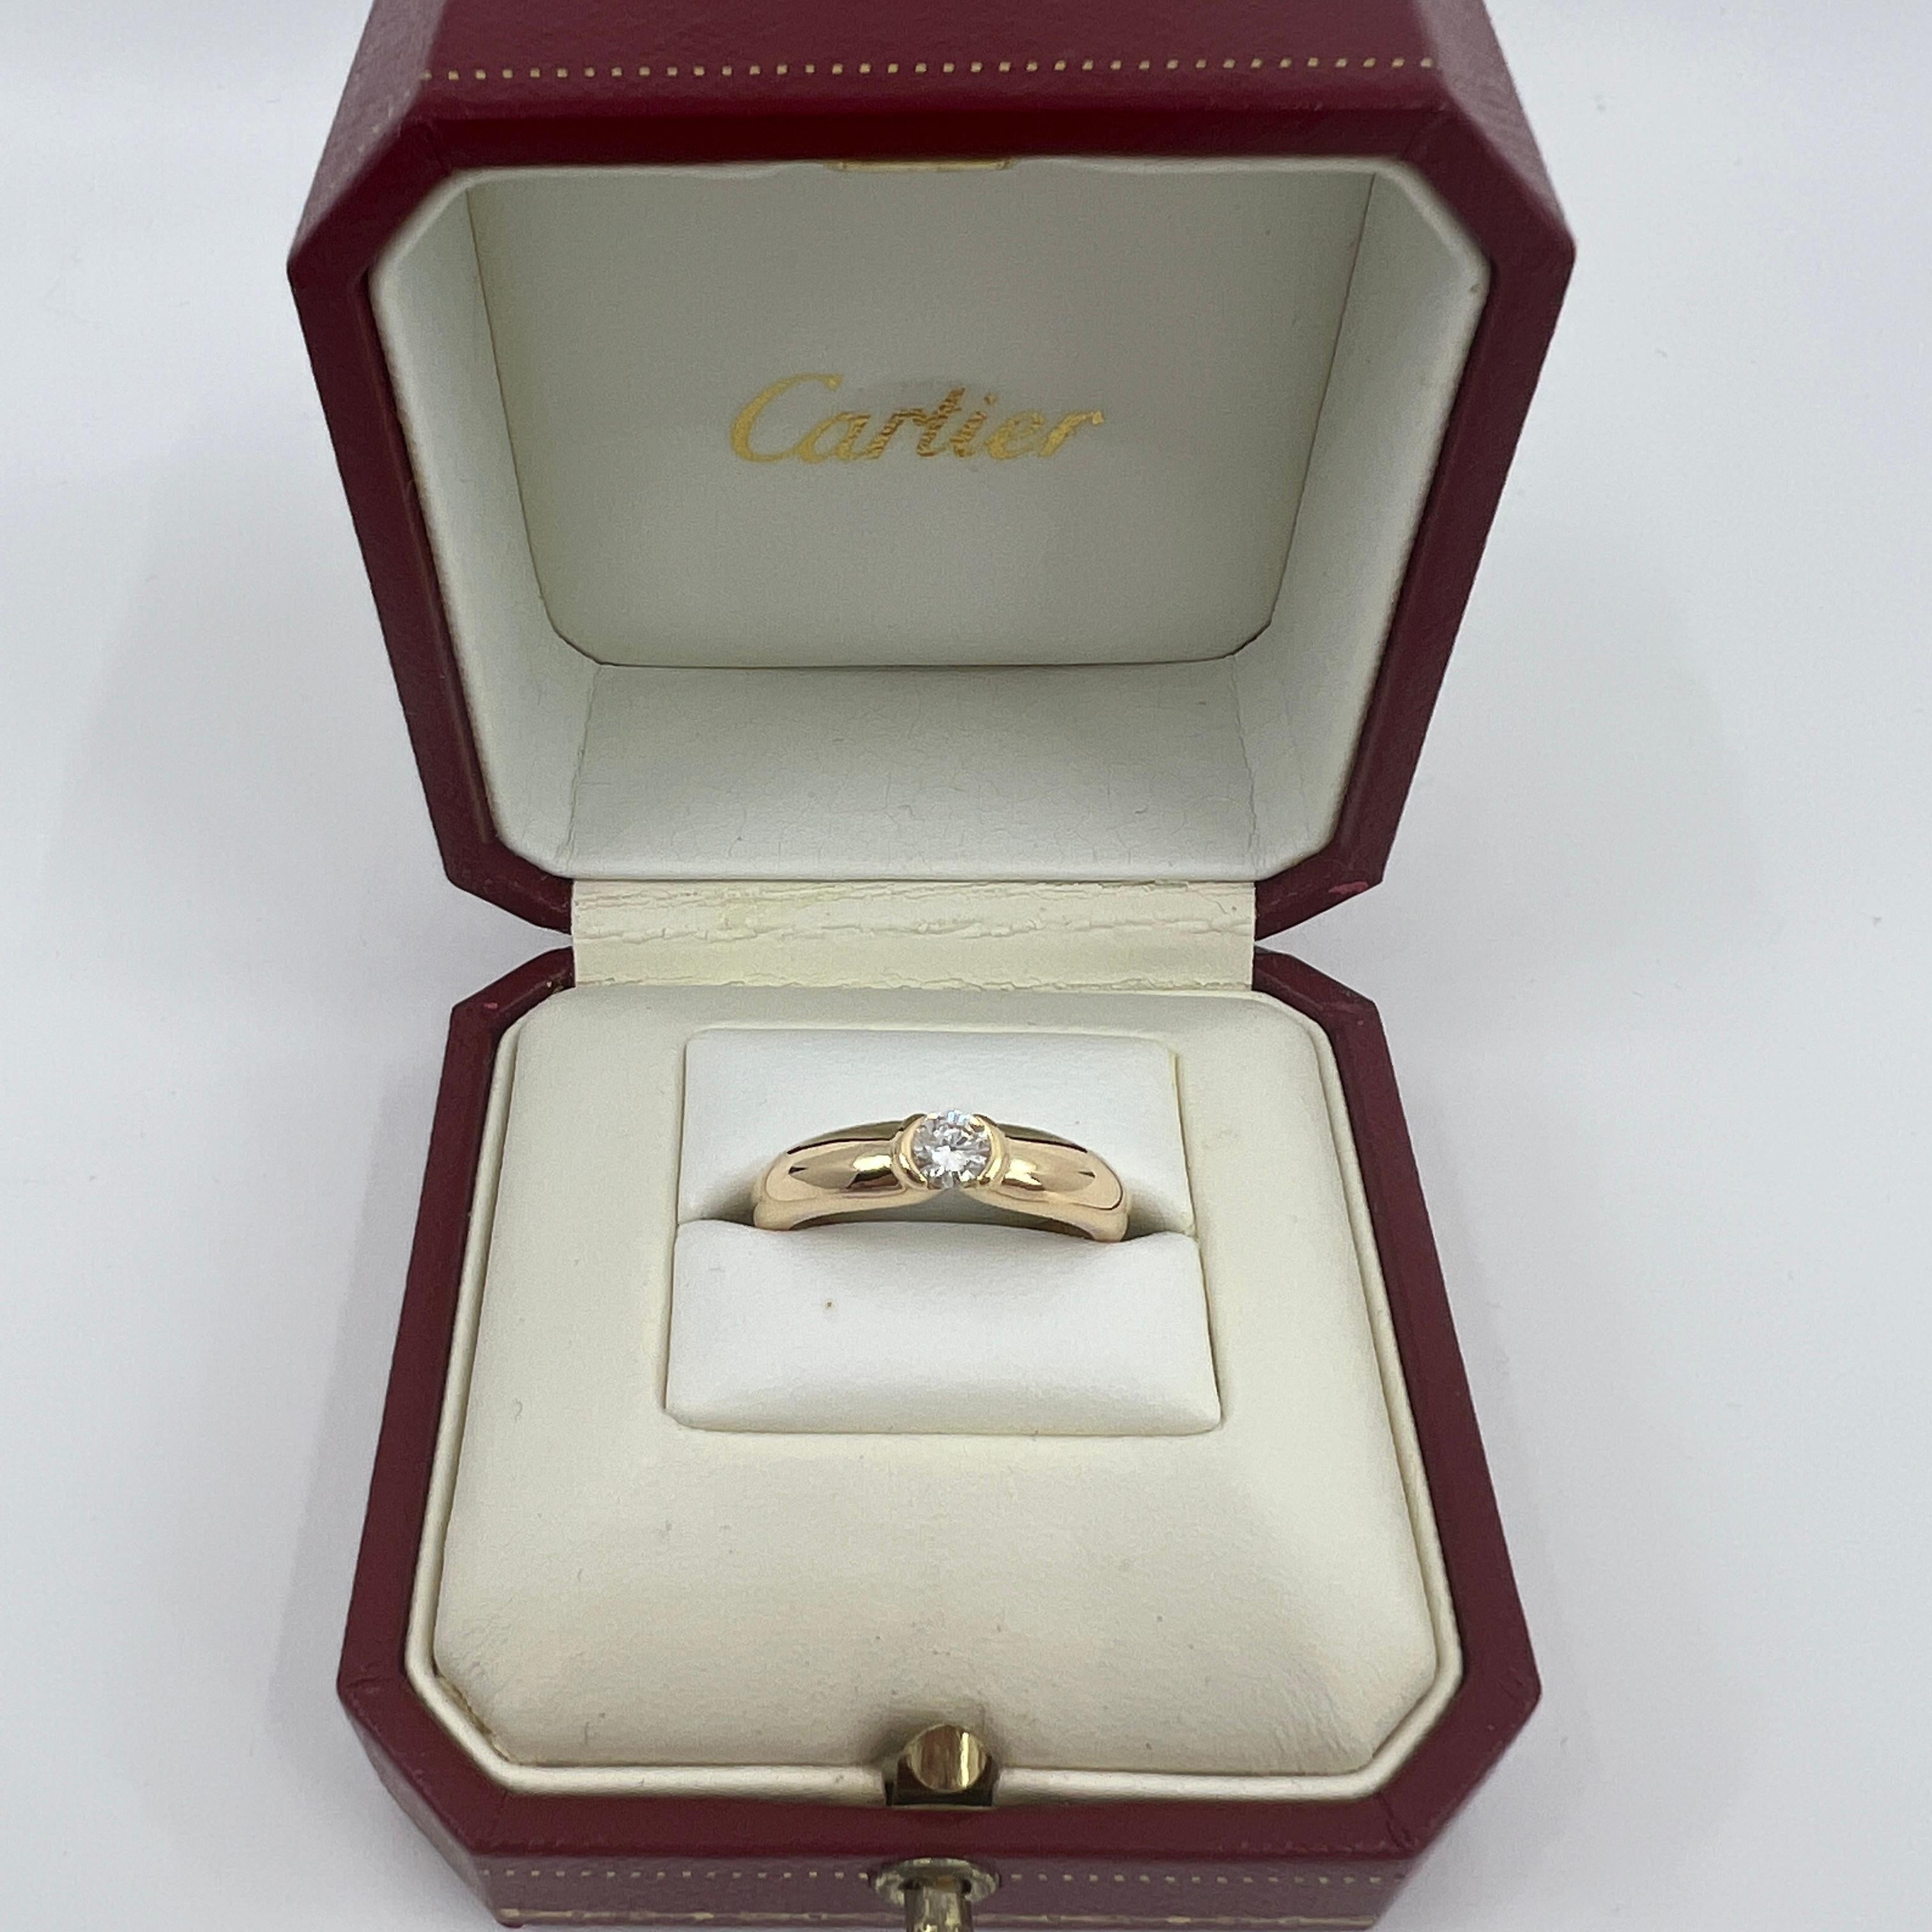 Vintage Cartier Runder Brillant Diamant 18k Gelbgold Solitär Ring.

Atemberaubender Ring aus Gelbgold, besetzt mit einem feinen runden Diamanten von 0.30 Karat. Farbe E, Reinheit VVS1, ausgezeichneter runder Brillantschliff. Edle Schmuckhäuser wie